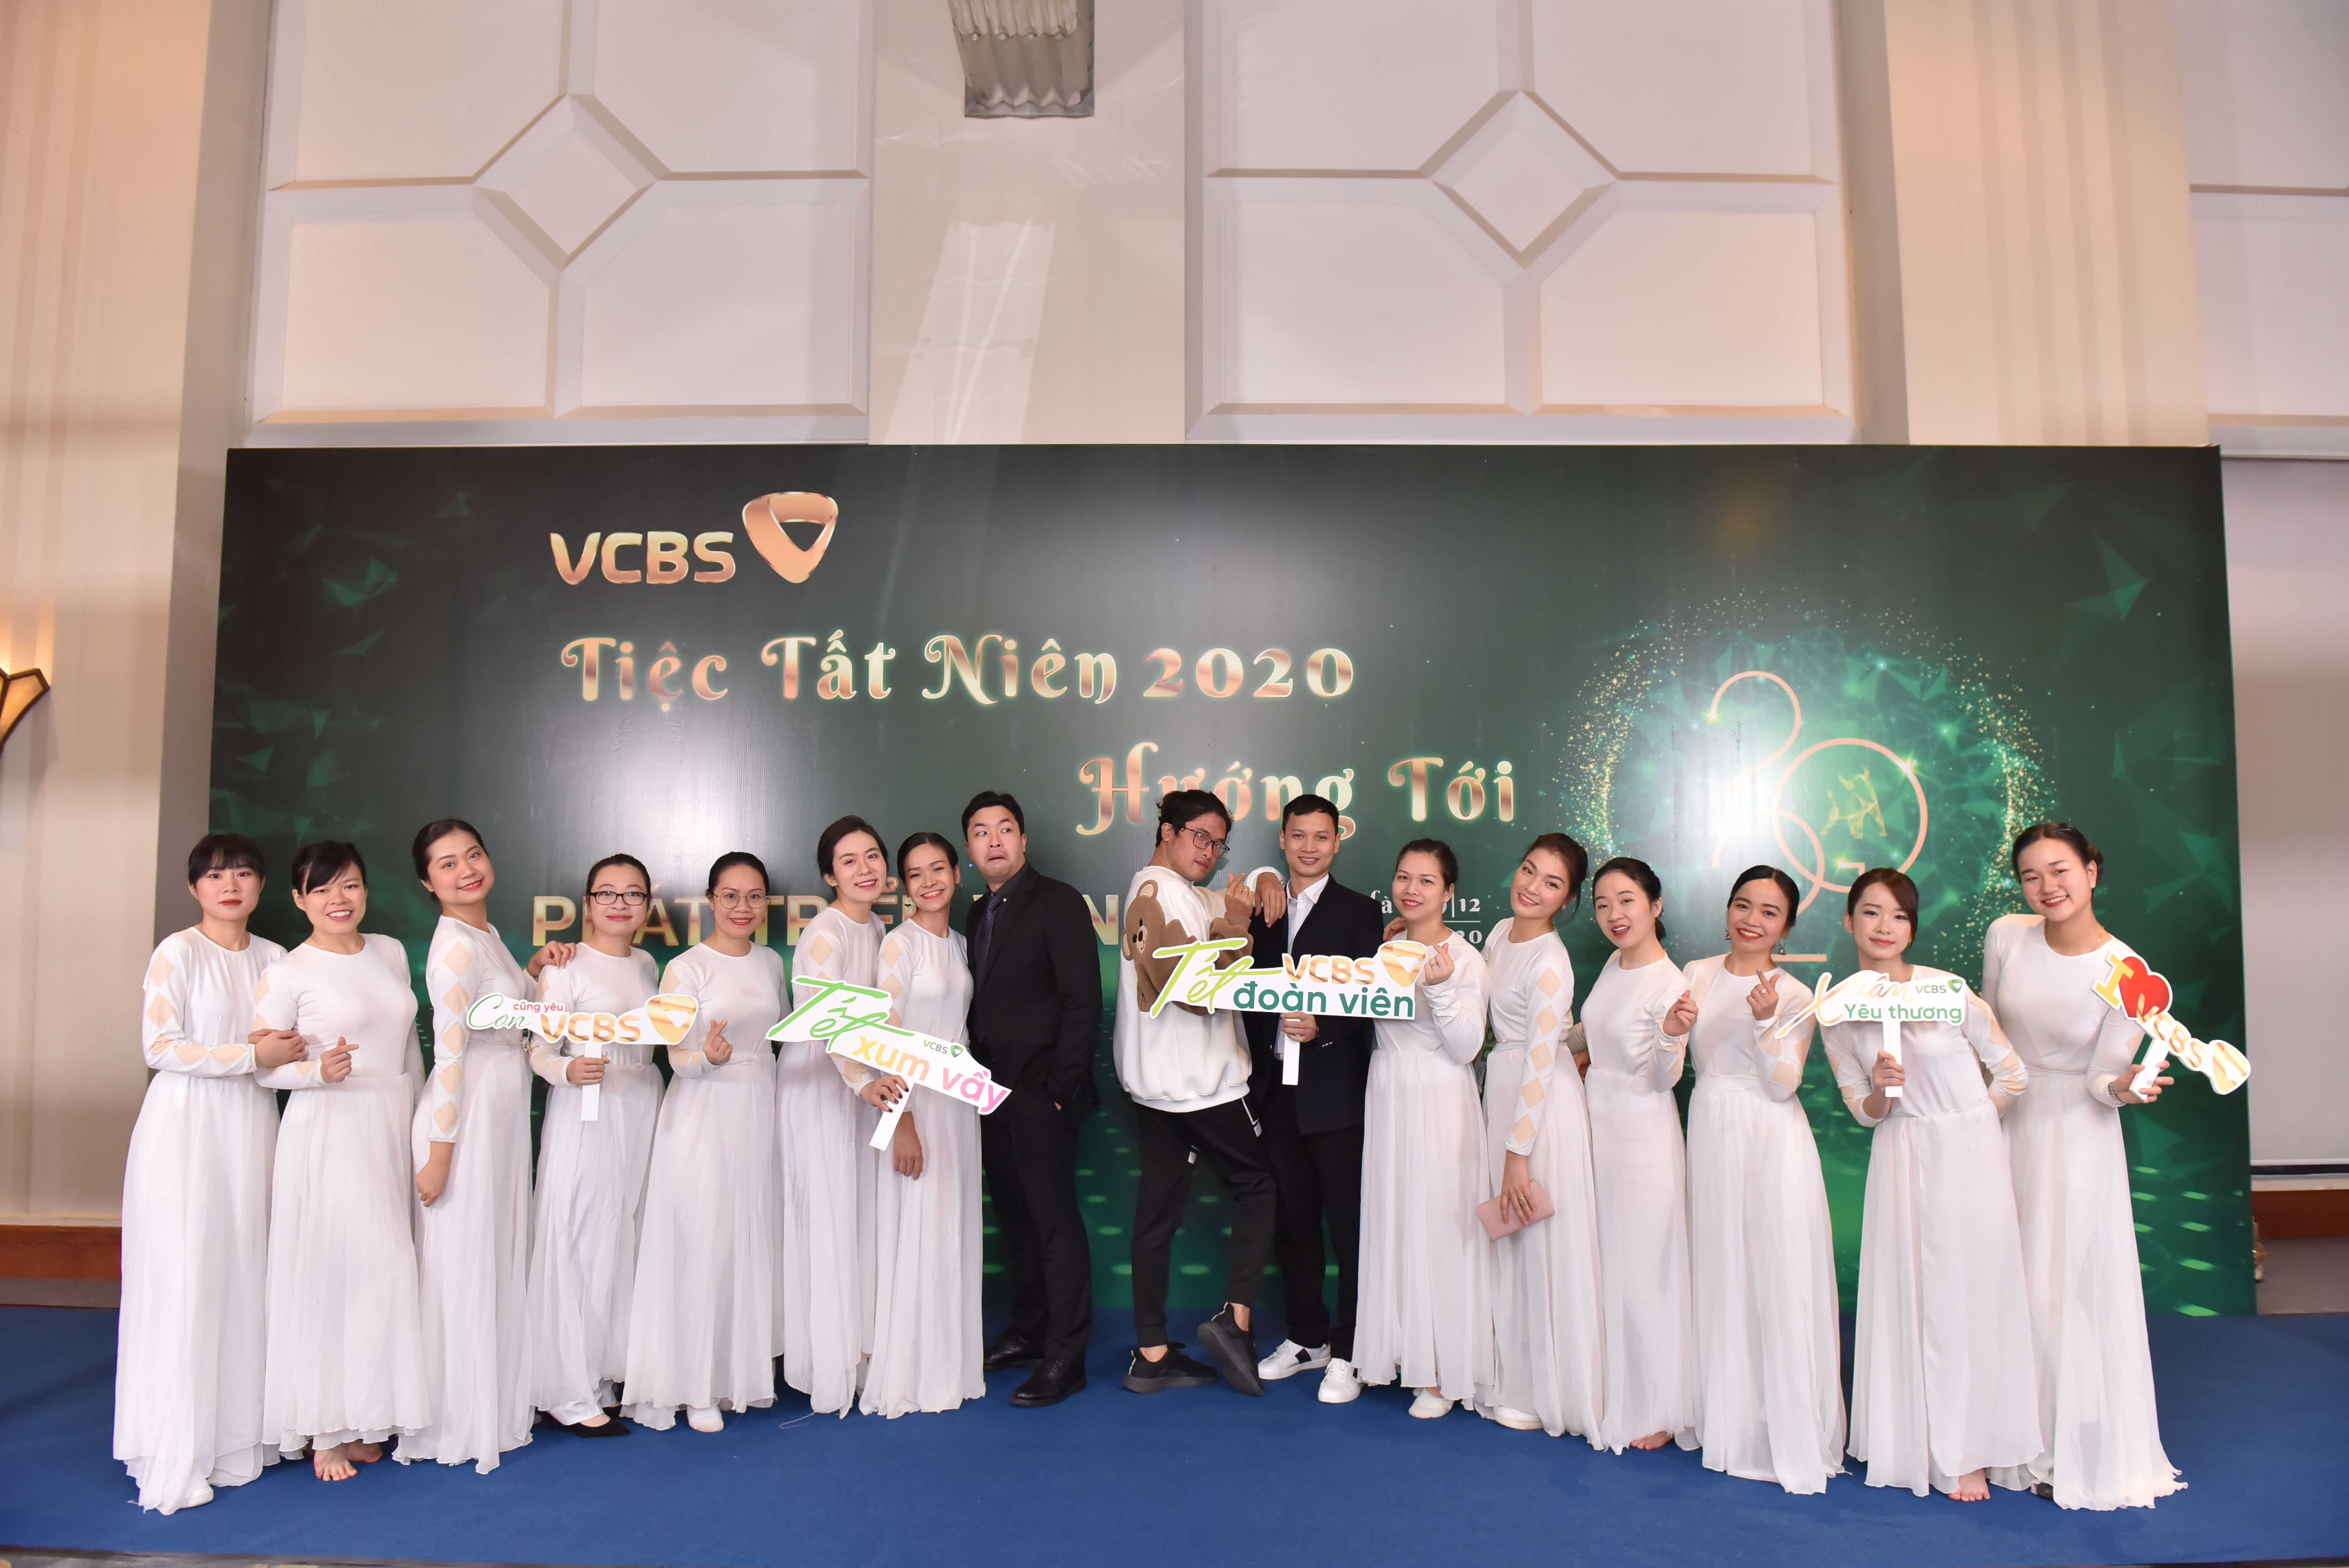 Tiệc tất niên của VCBS tổ chức tháng 12/2020